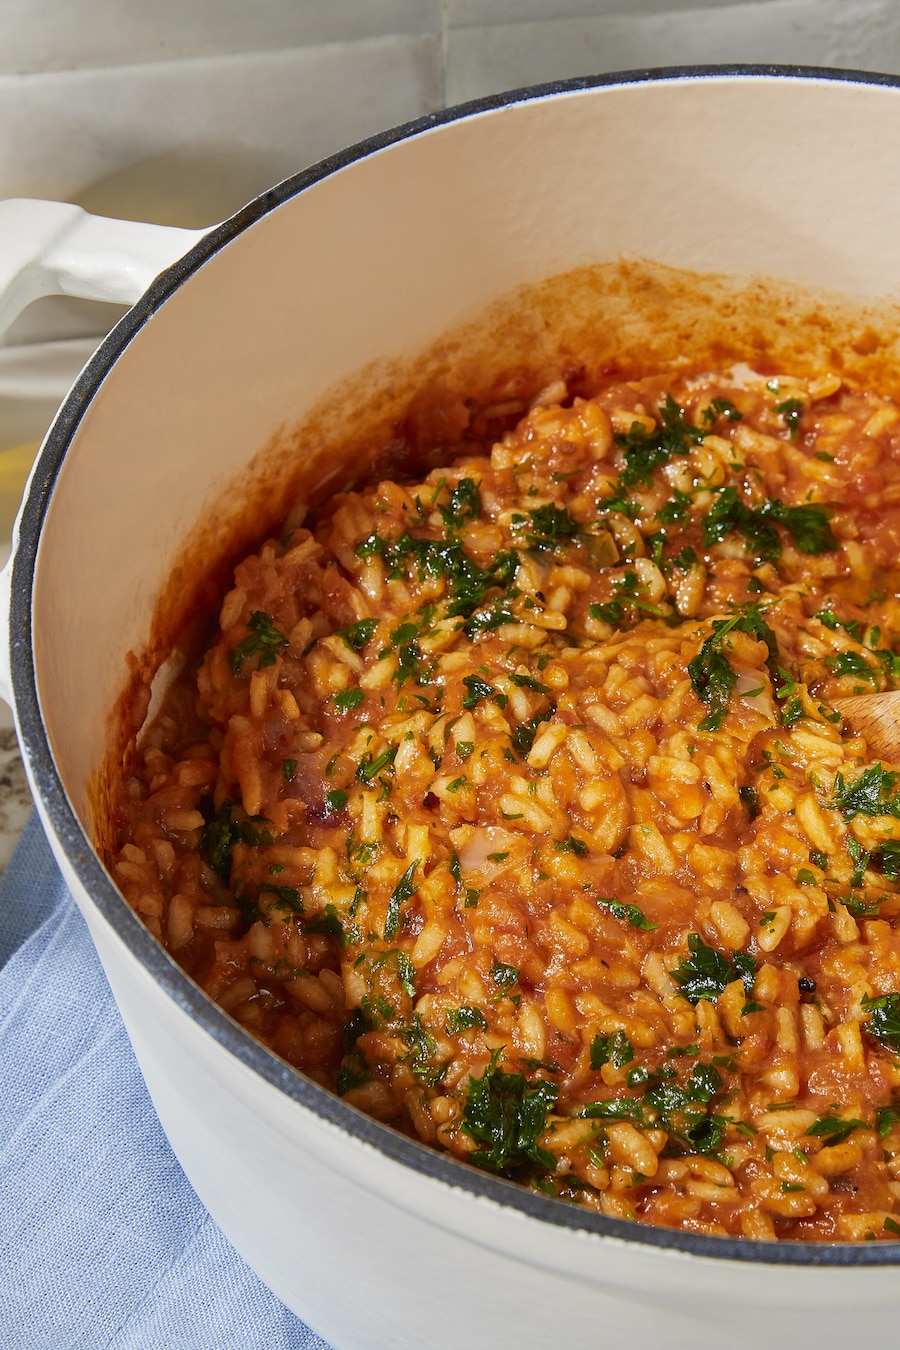 Une casserole remplie de risotto végétalien tomate grillée et harissa.